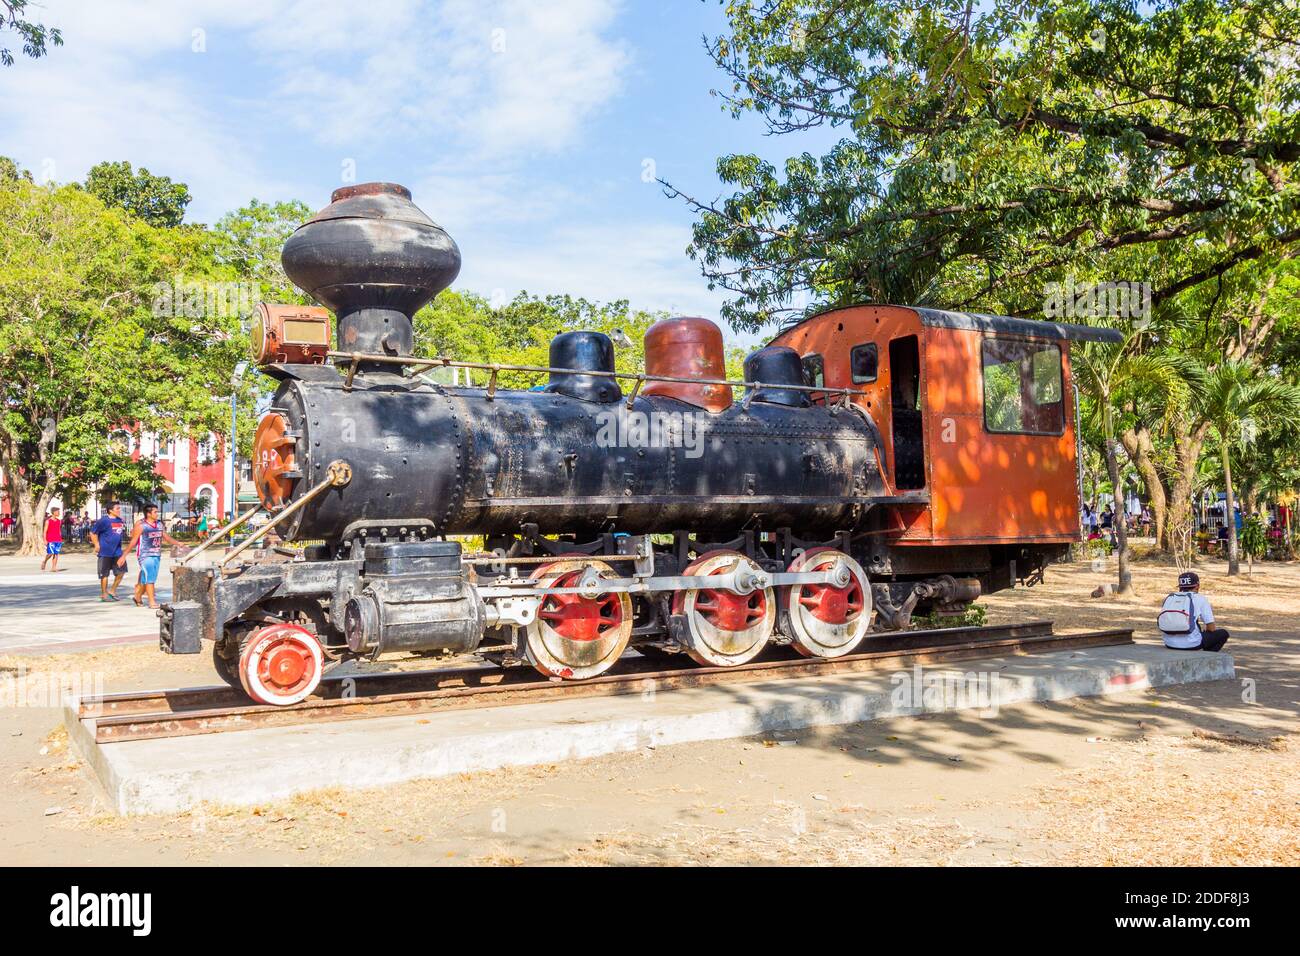 Une vieille locomotive exposée dans un parc à Iloilo City, aux Philippines Banque D'Images